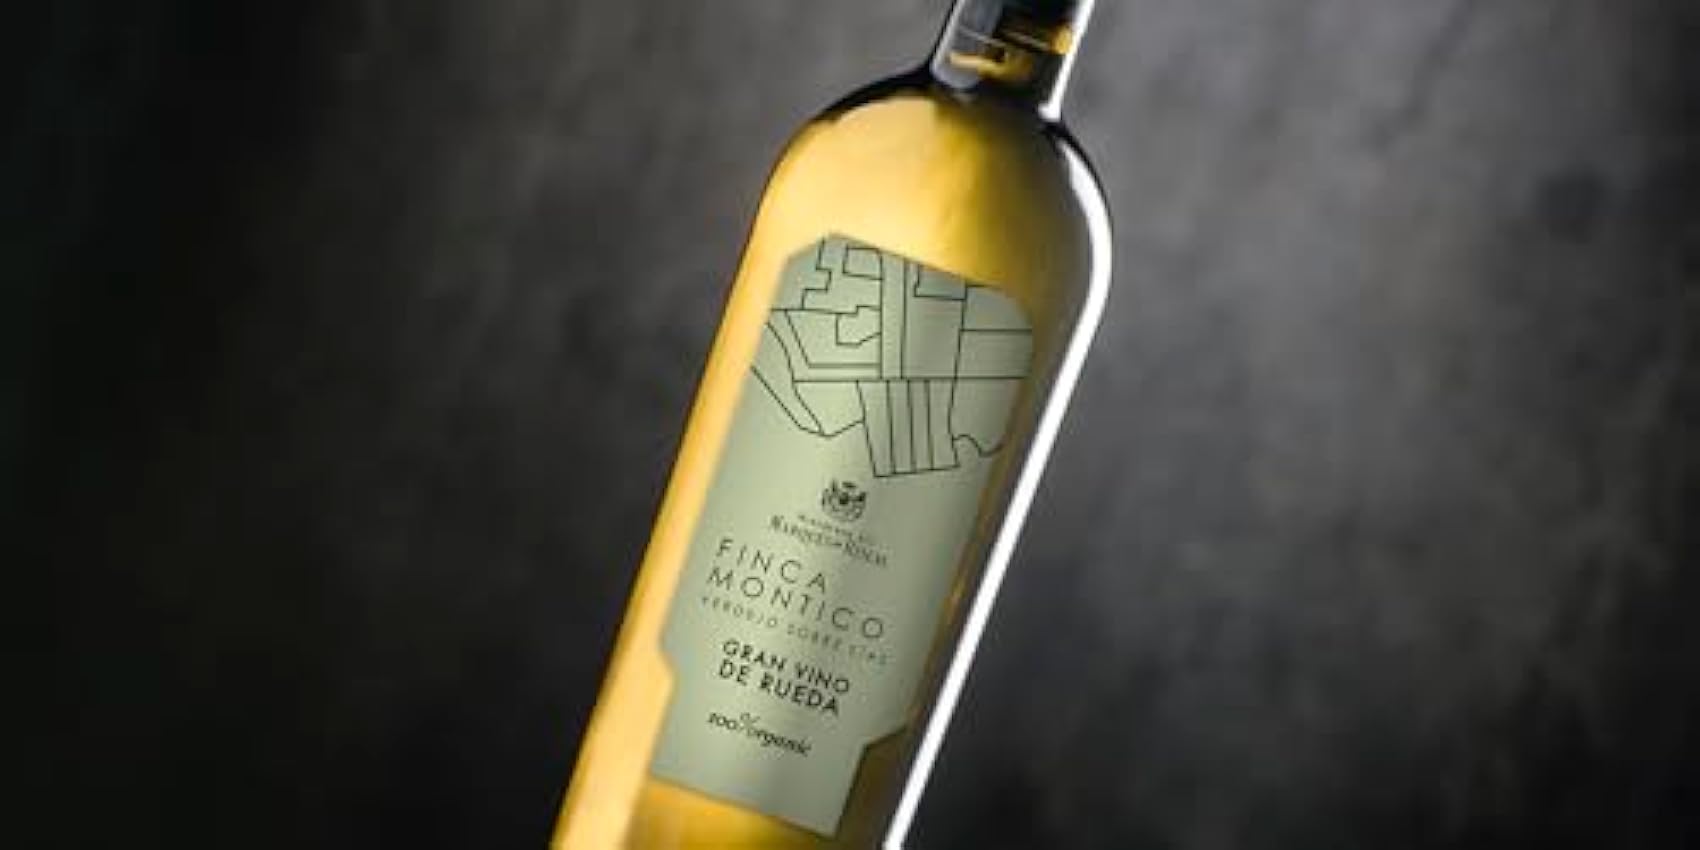 Marqués de Riscal - Finca Montico Gran Vino de Rueda, Denominación de Origen Rueda, Vino Blanco Verdejo, 100% Organic con certificación ecológica - Estuche 3 botellas x 750 ml GNjIppK6